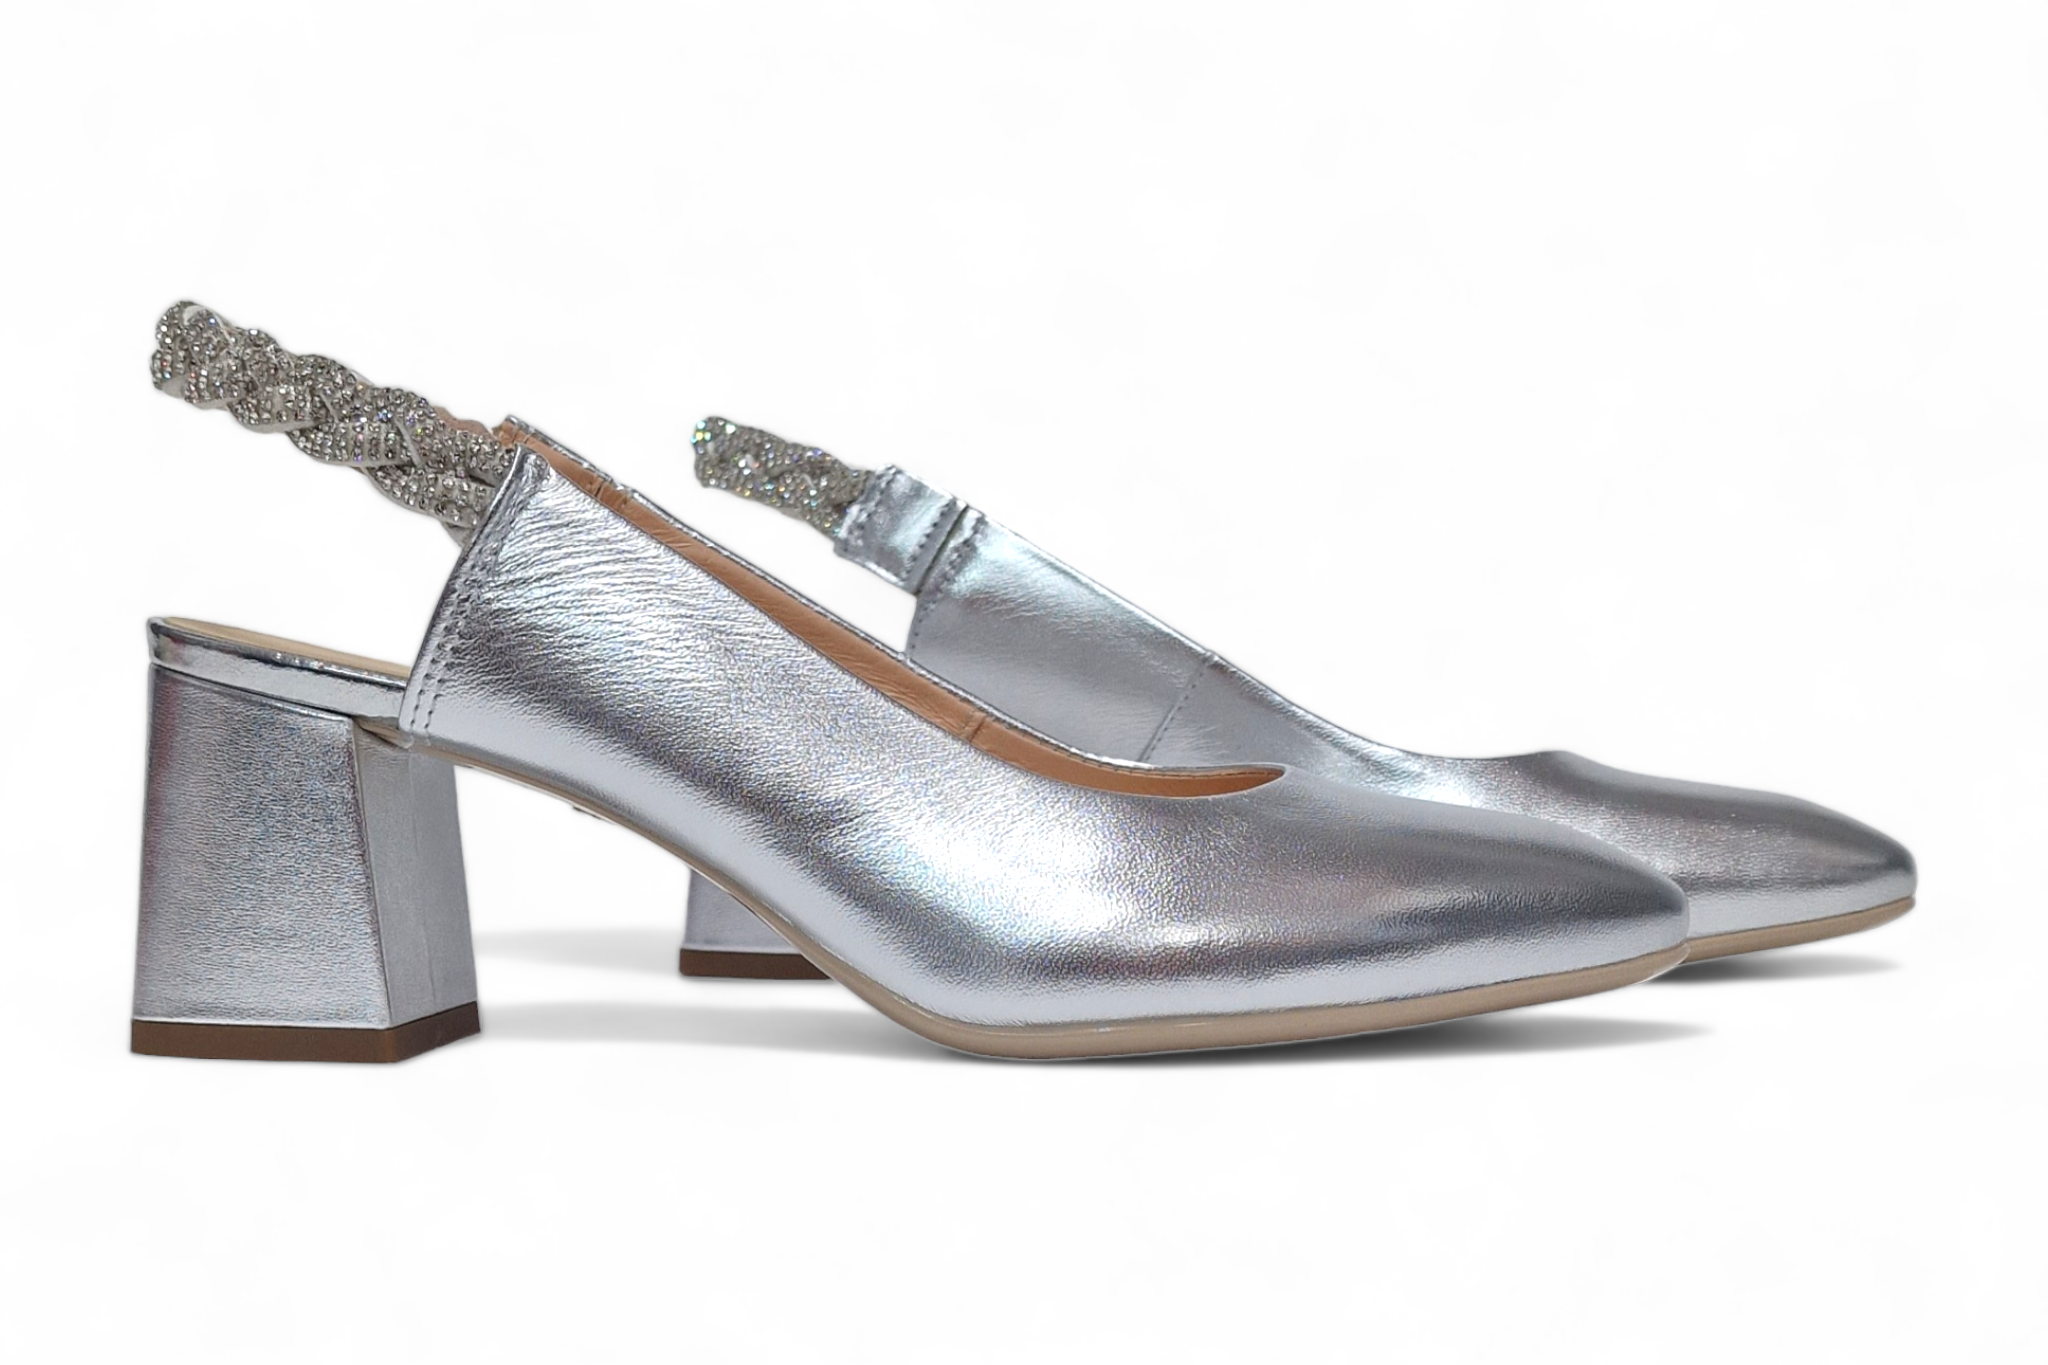 Pantofi dama eleganti piele naturala SALA dec 9977 argintiu